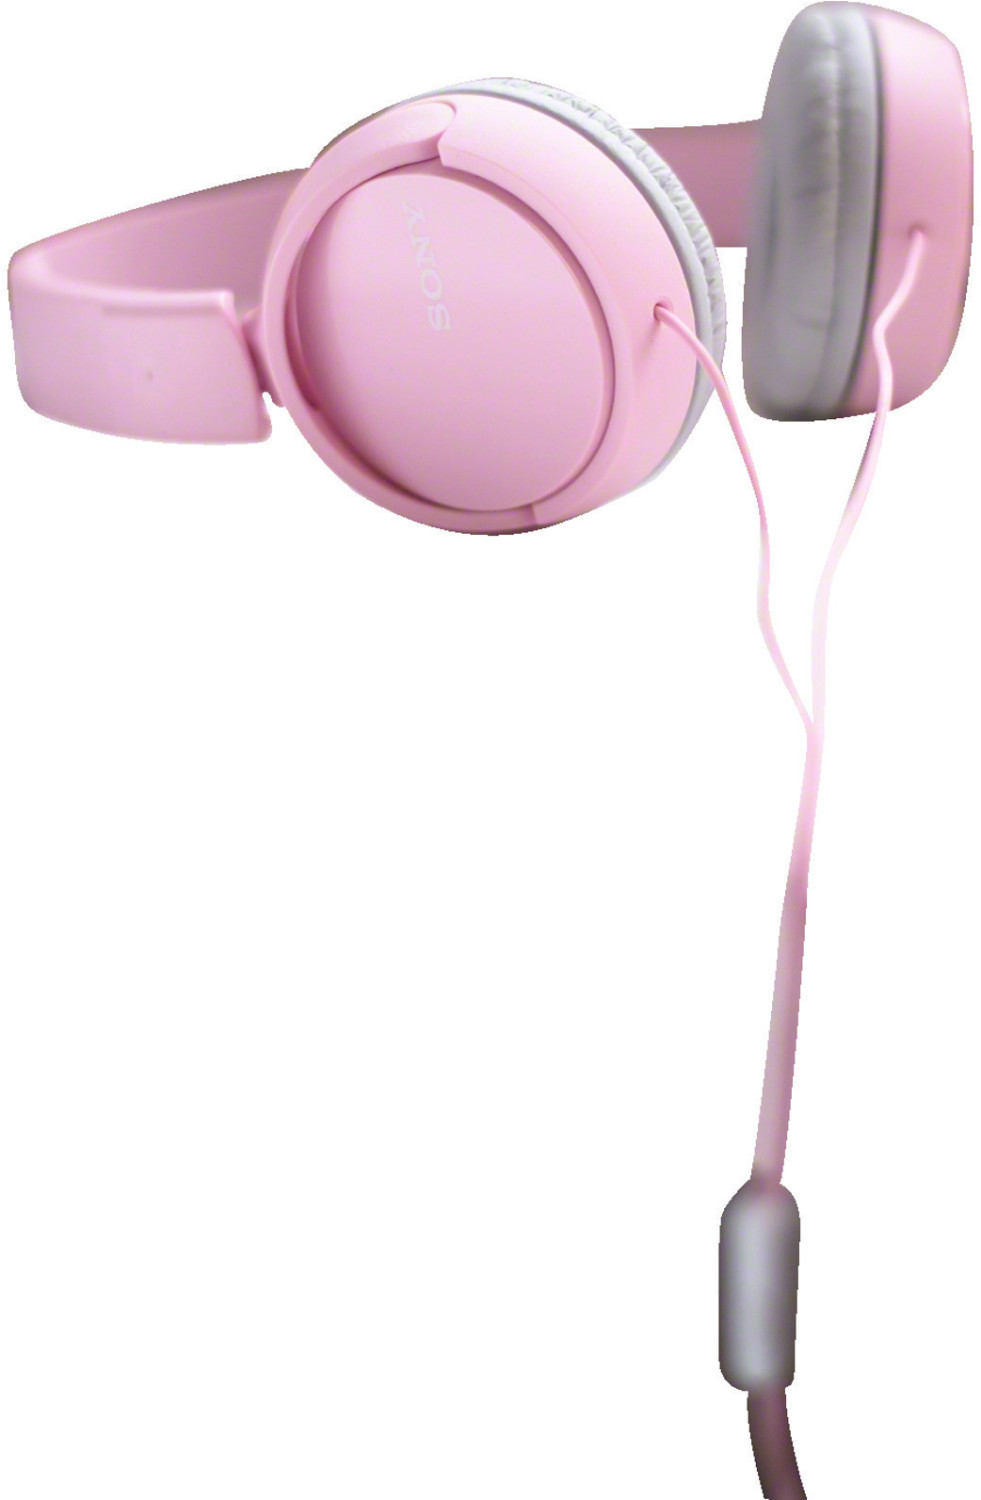 Auriculares De Diadema Sony Con Cable Mdr-zx110 Rosa